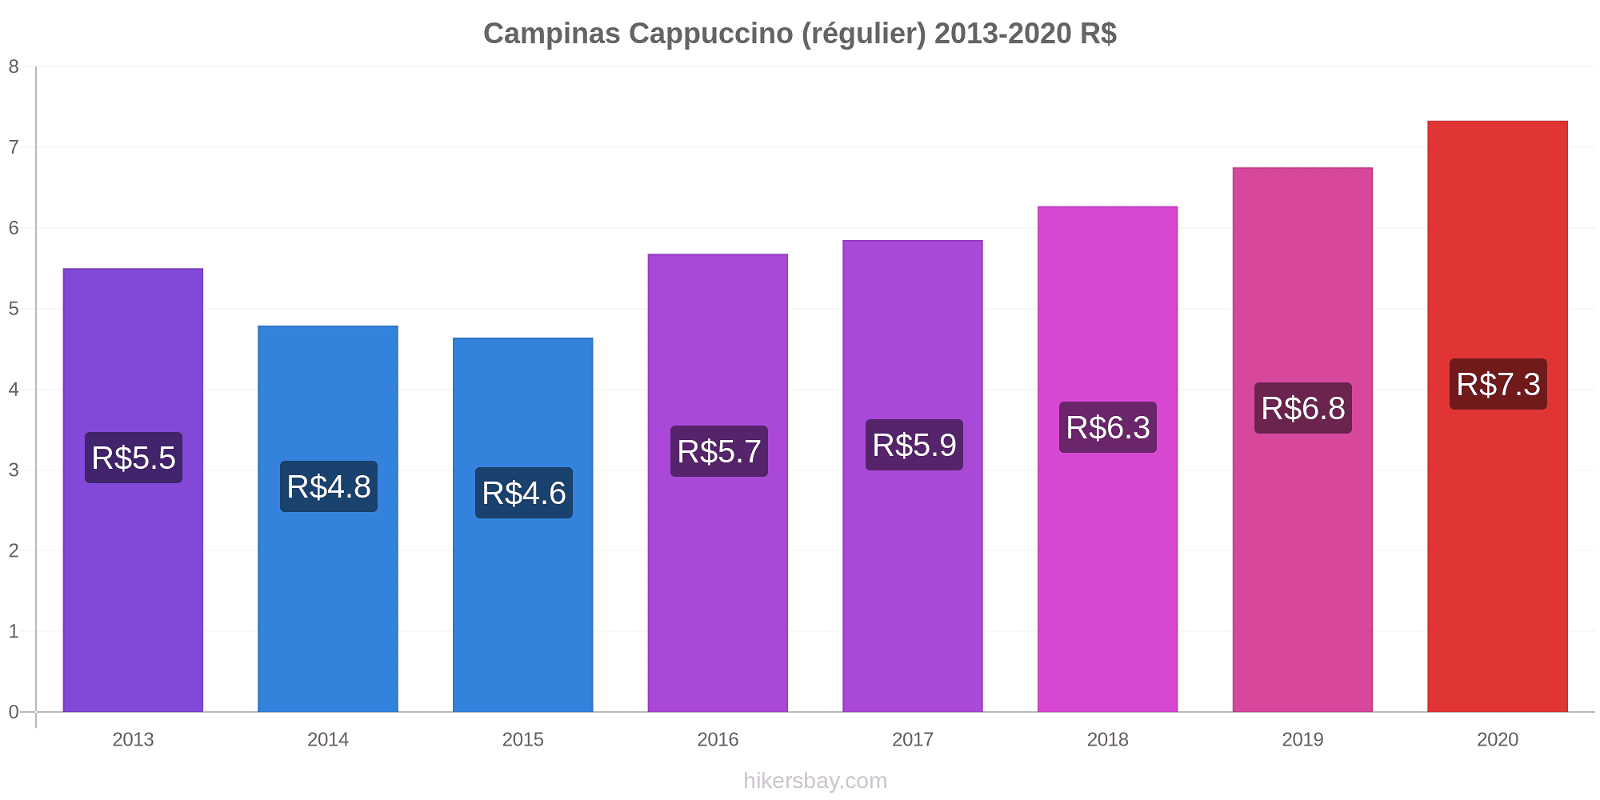 Campinas changements de prix Cappuccino (régulier) hikersbay.com